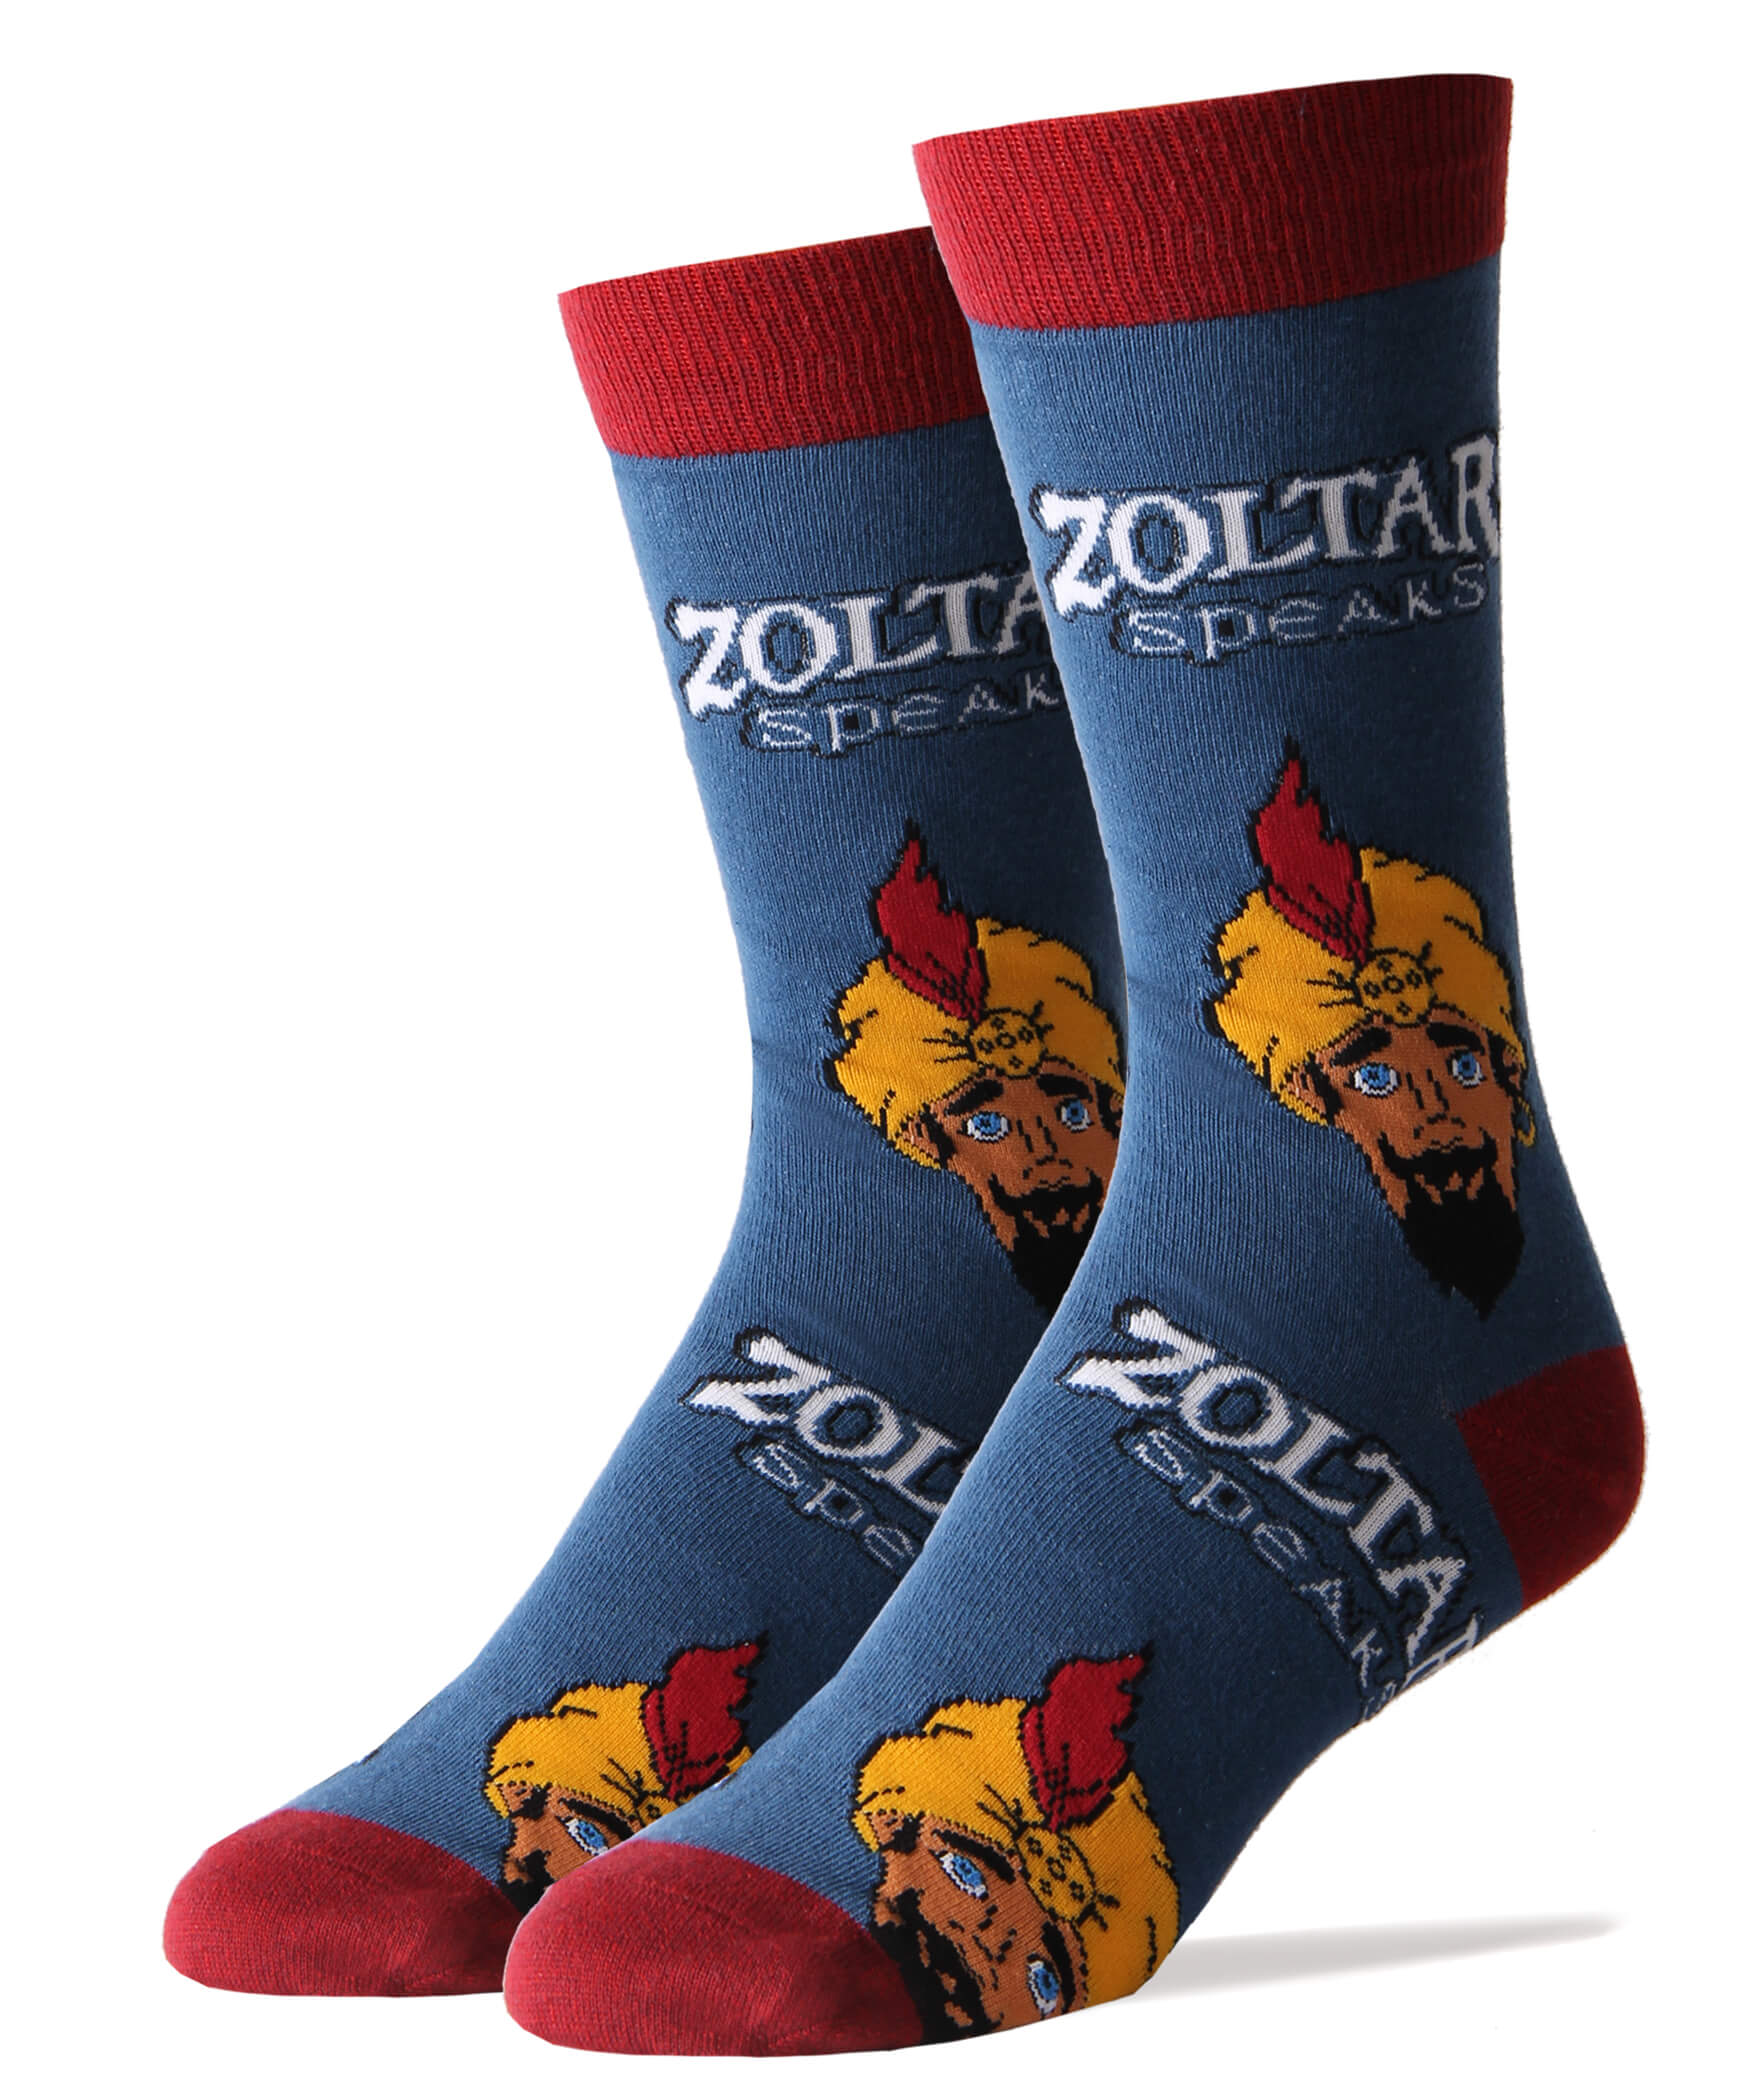 Zoltar Speaks Again Socks